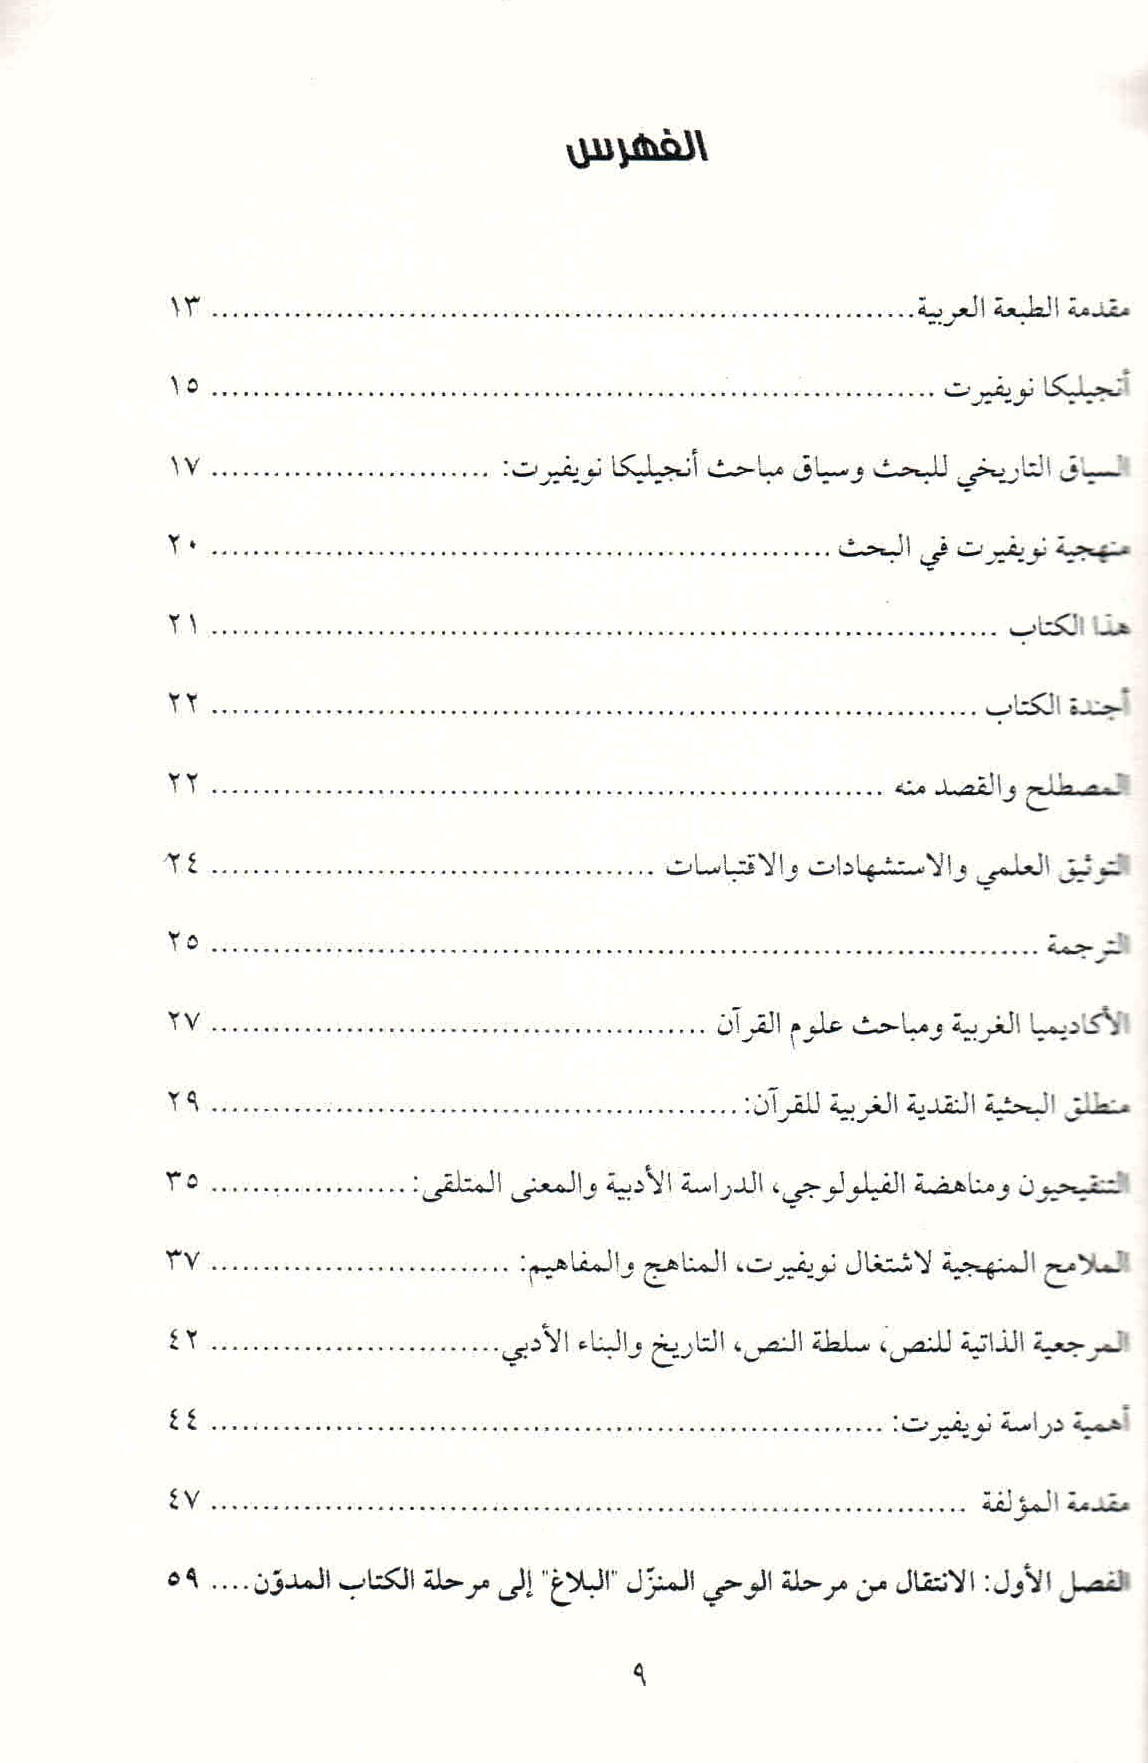 ص. 9 قائمة محتويات كتاب "كيف سحر القرآن العالم" لأنجيليكا نويفيرت